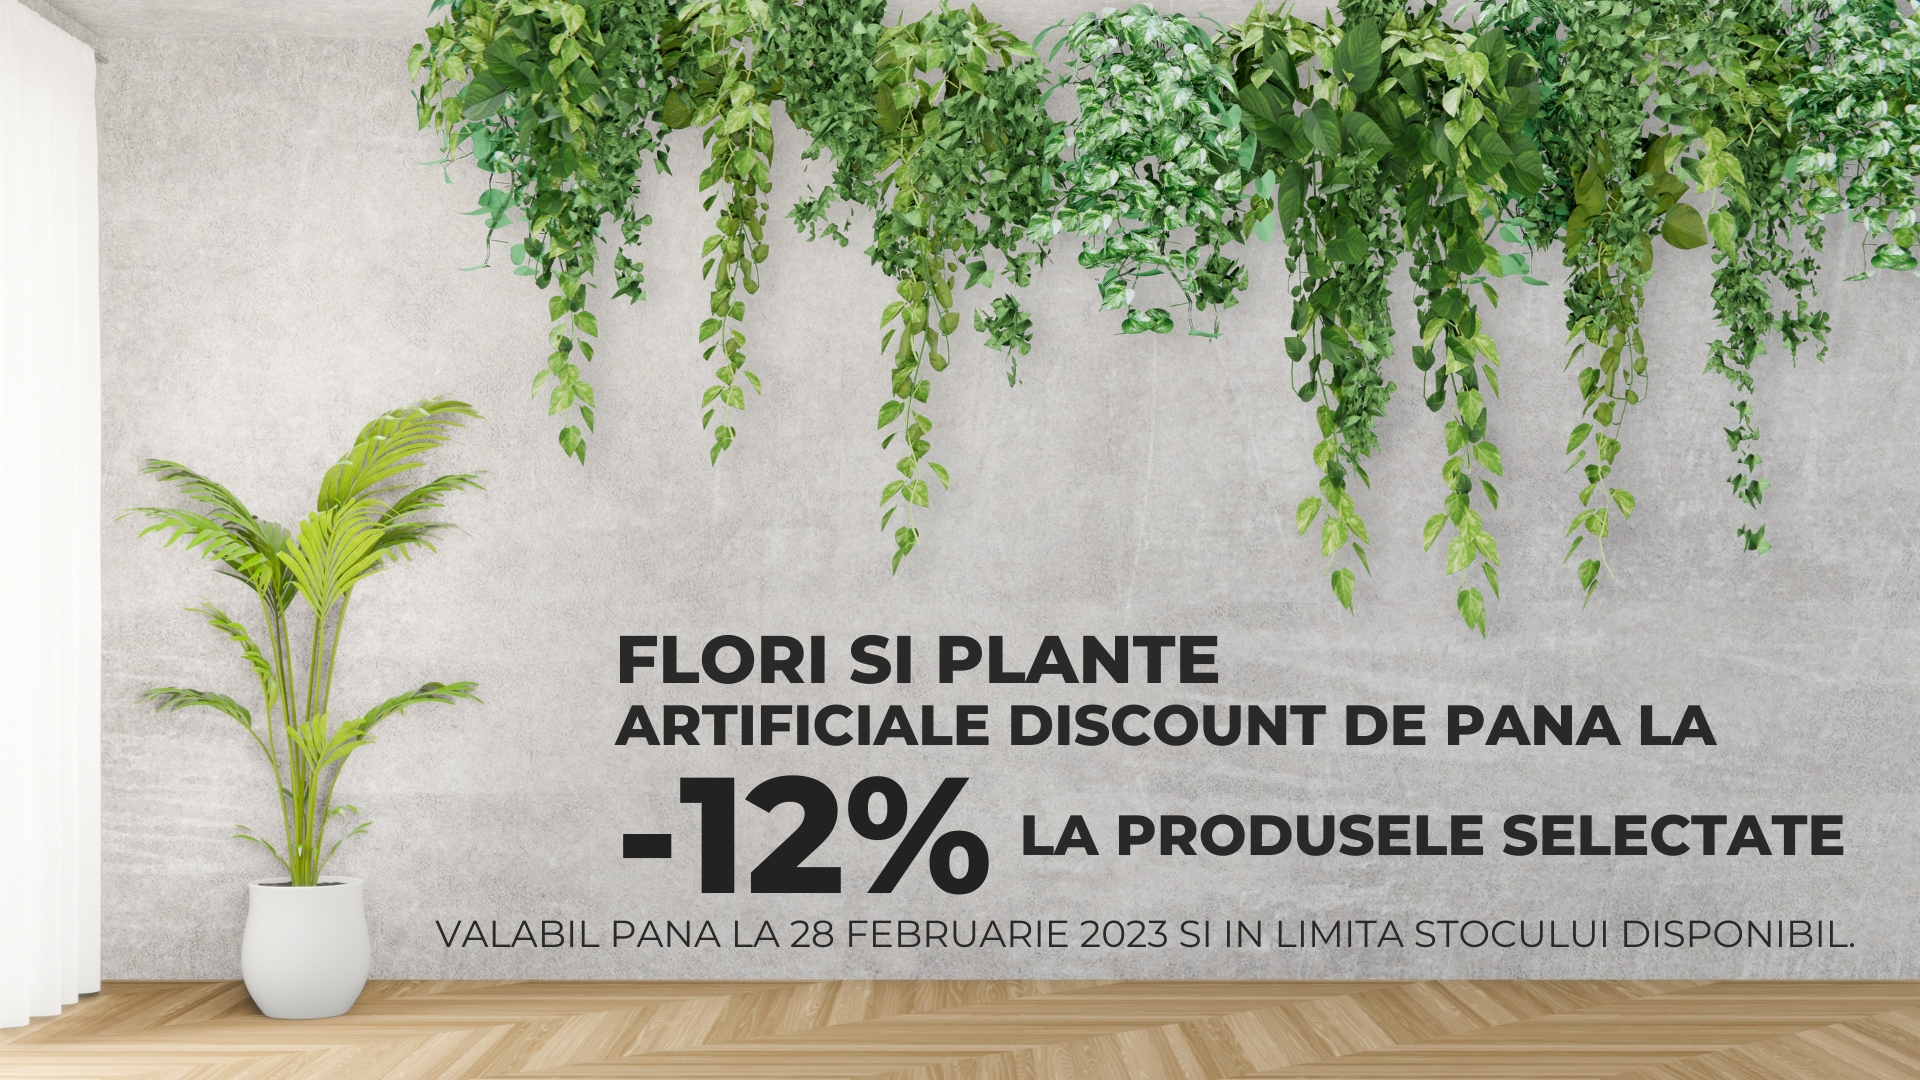 Promotie flori si plante artificiale amsieu.ro AM SI EU